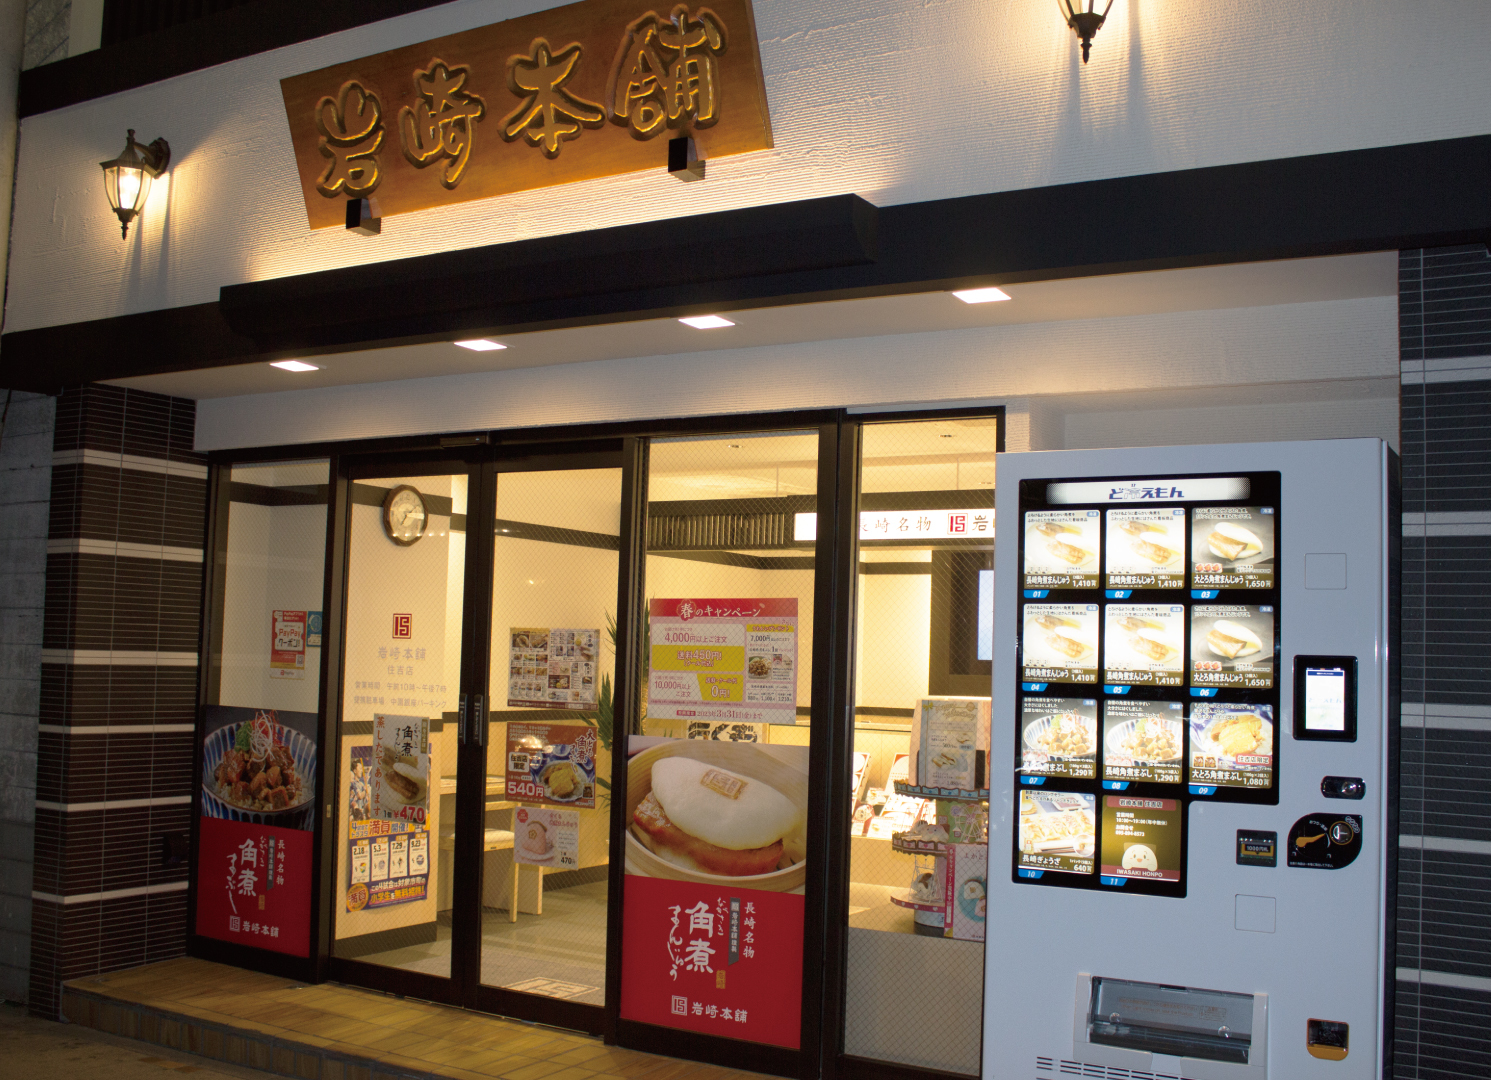 長崎で愛される角煮まんじゅうの冷凍自動販売機を
「岩崎本舗住吉店」前に設置し、3月20日より販売開始